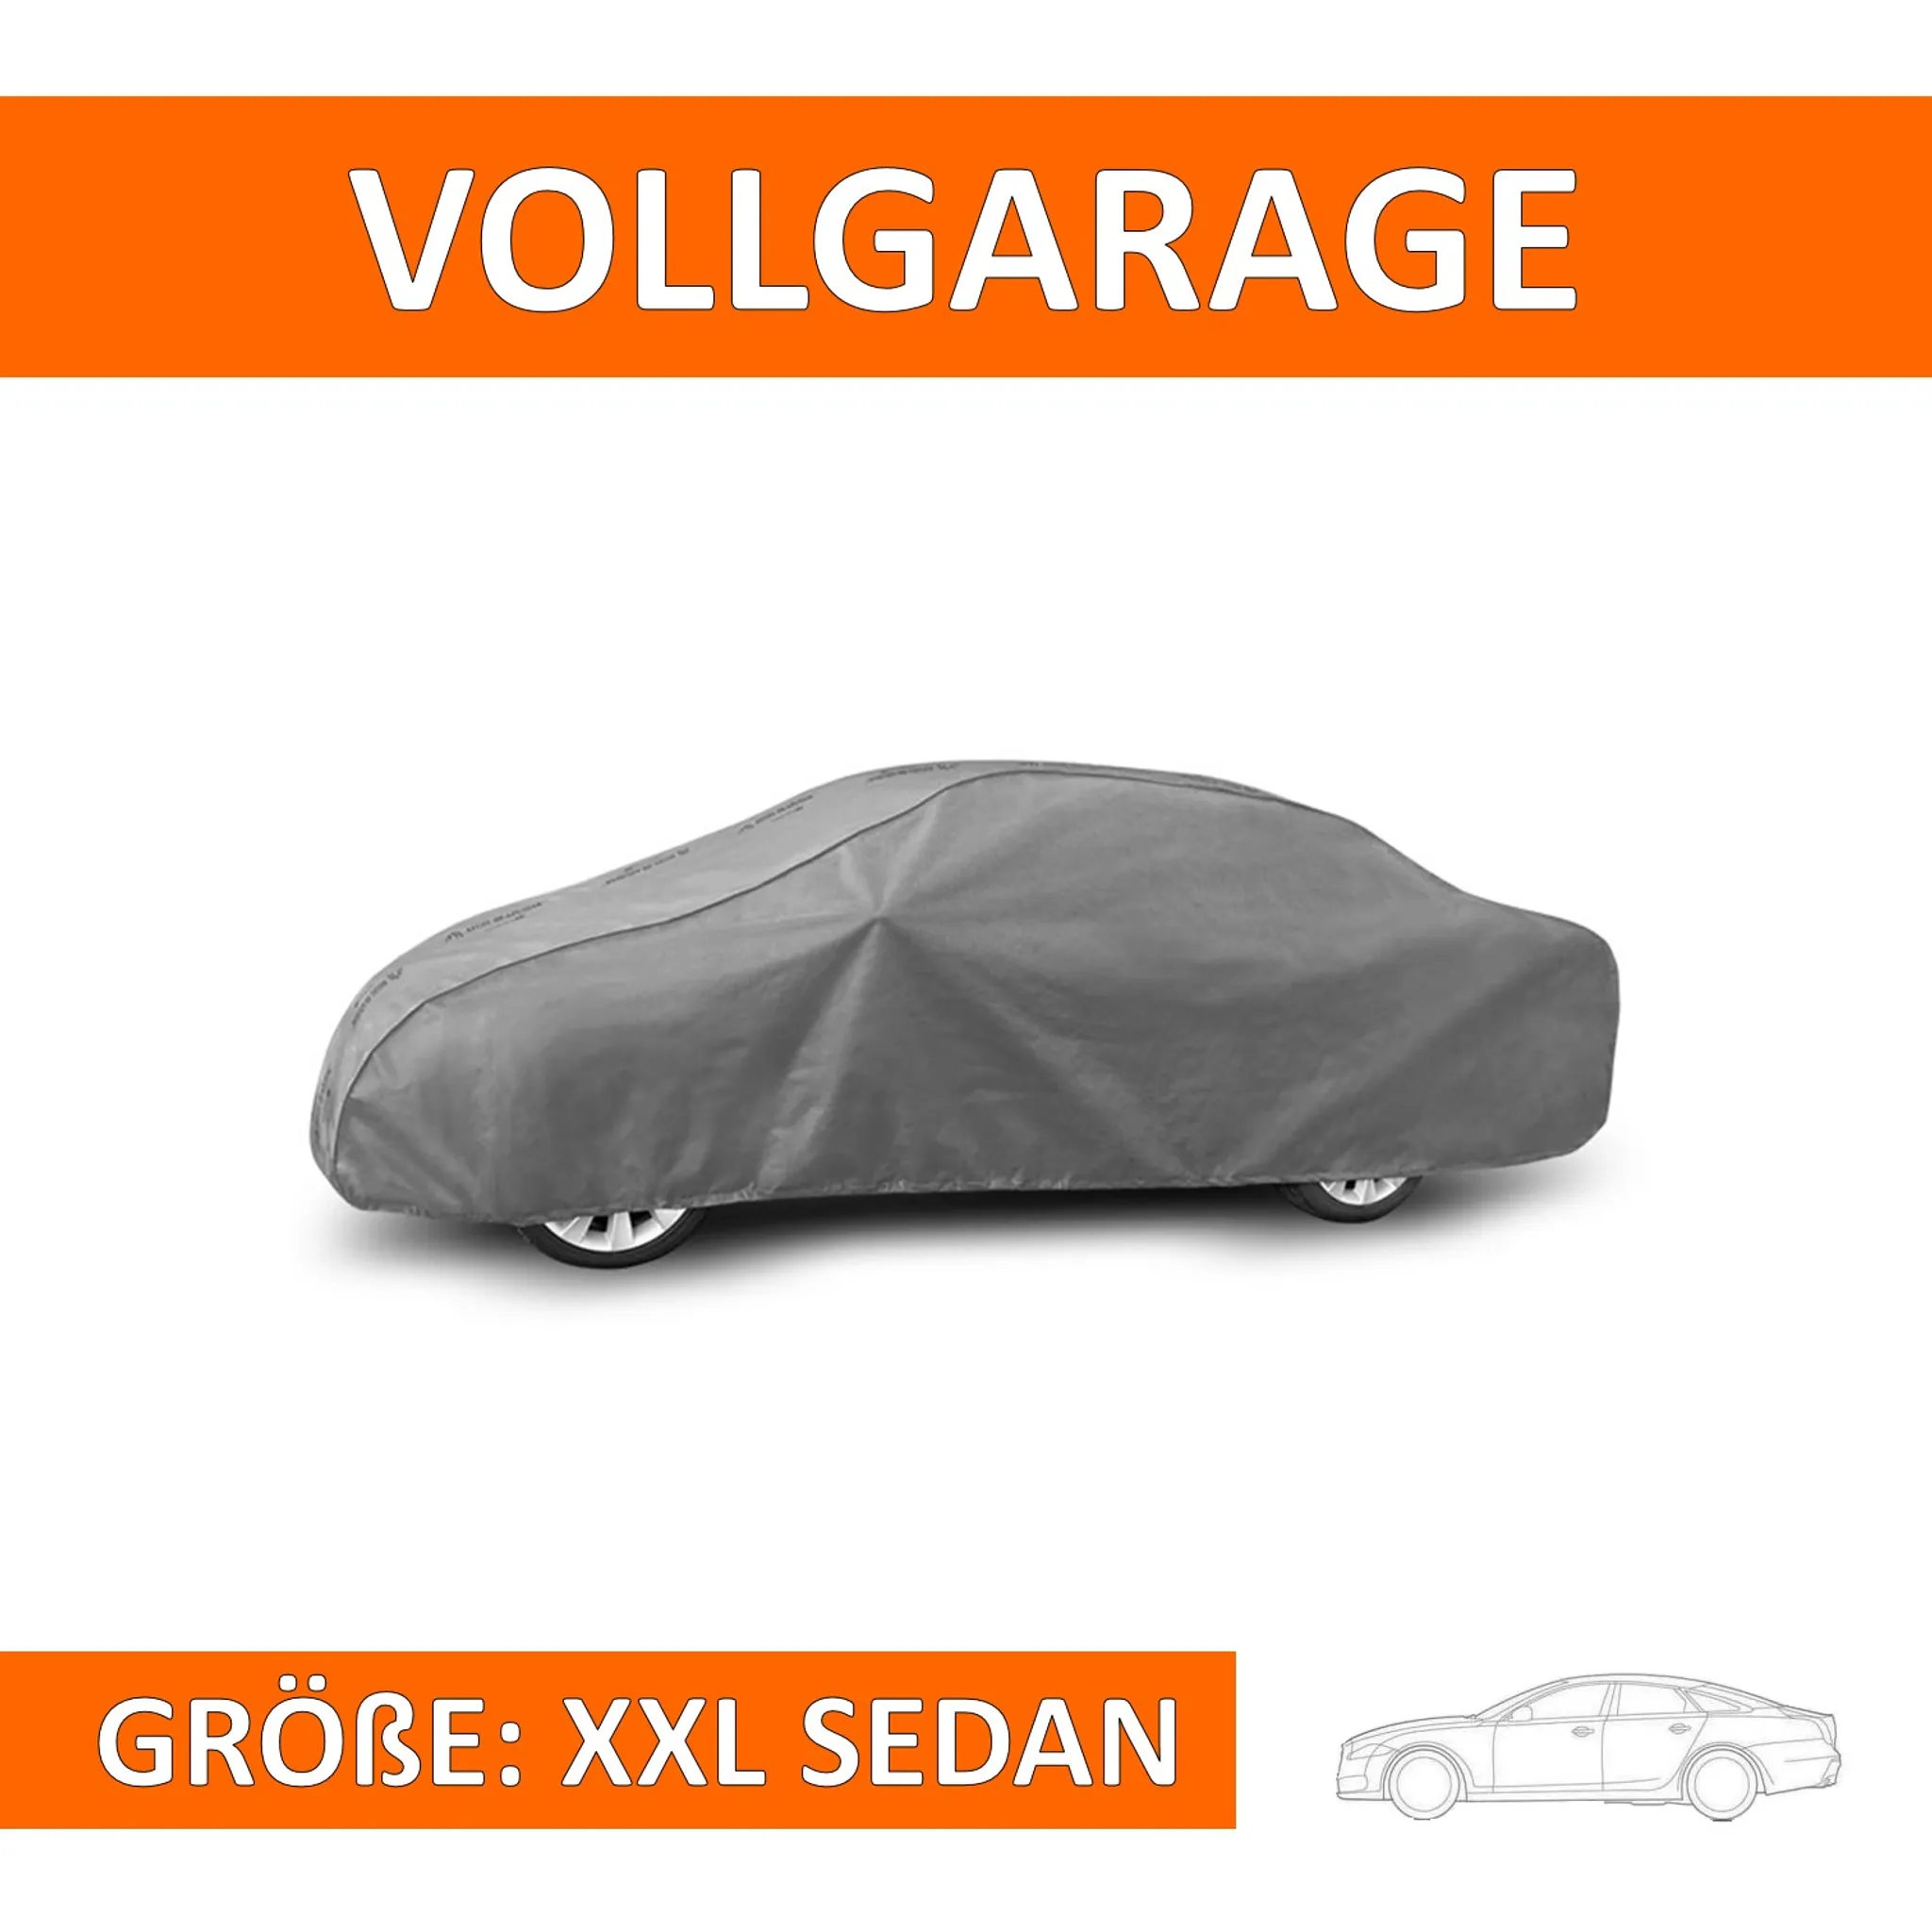 4,17€/m² PKW Vollgarage Auto Abdeckung in der Größe L für große Mittelklasse Wagen 480 x 175 x 120 cm 